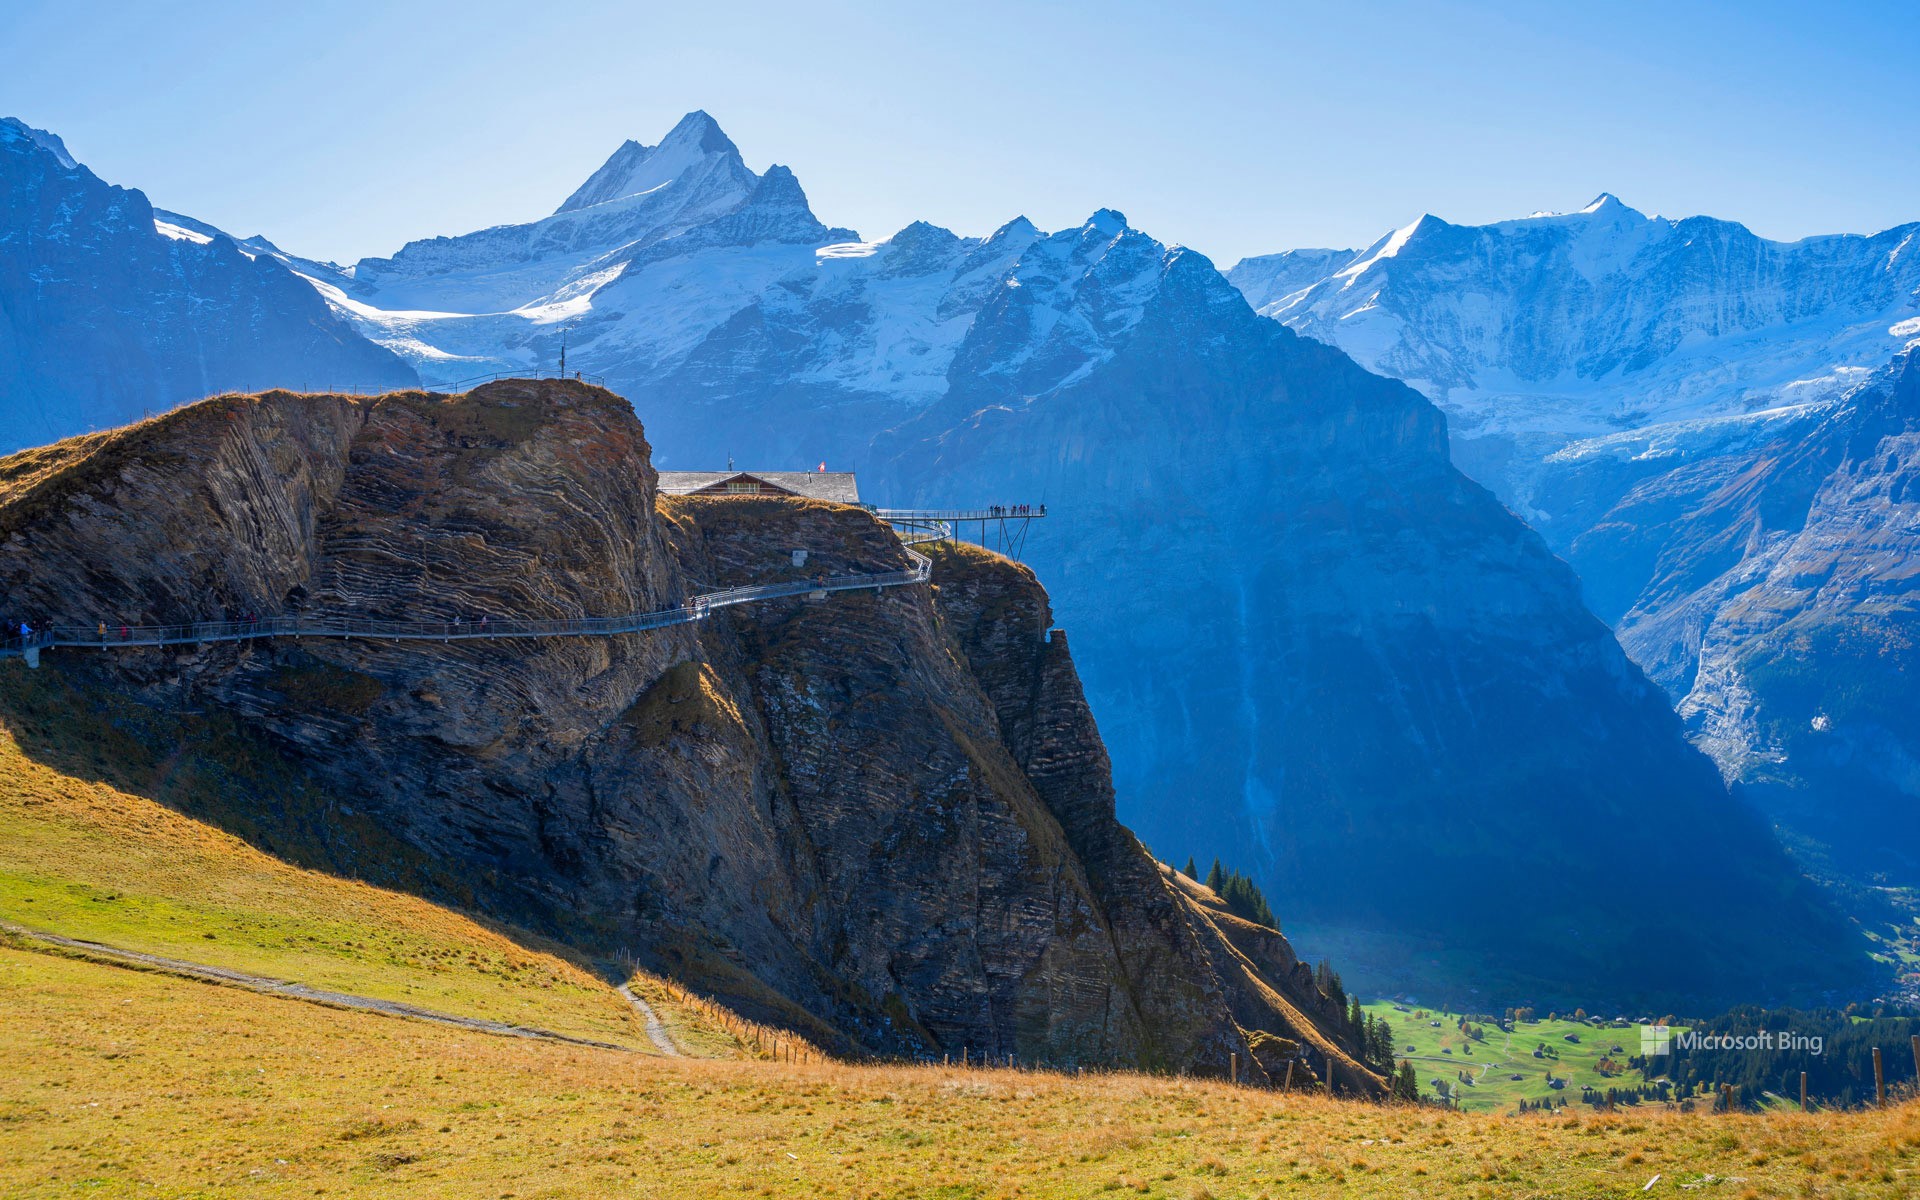 First Cliff Walk on First near Grindelwald, Switzerland